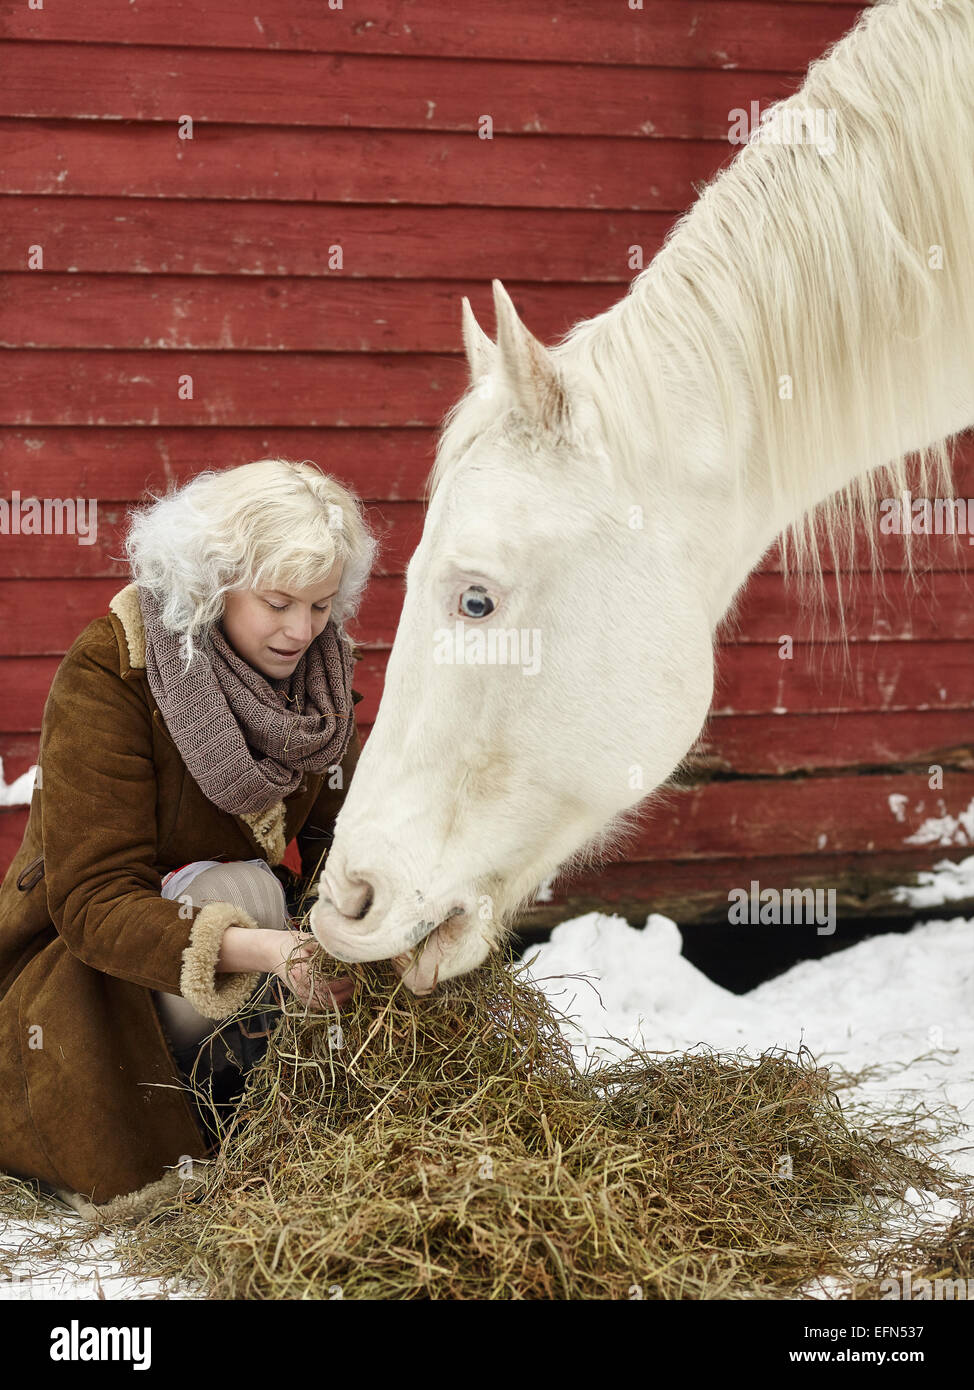 Attractive blonde femme nourrit un cheval blanc, ciel couvert journée d'hiver Banque D'Images